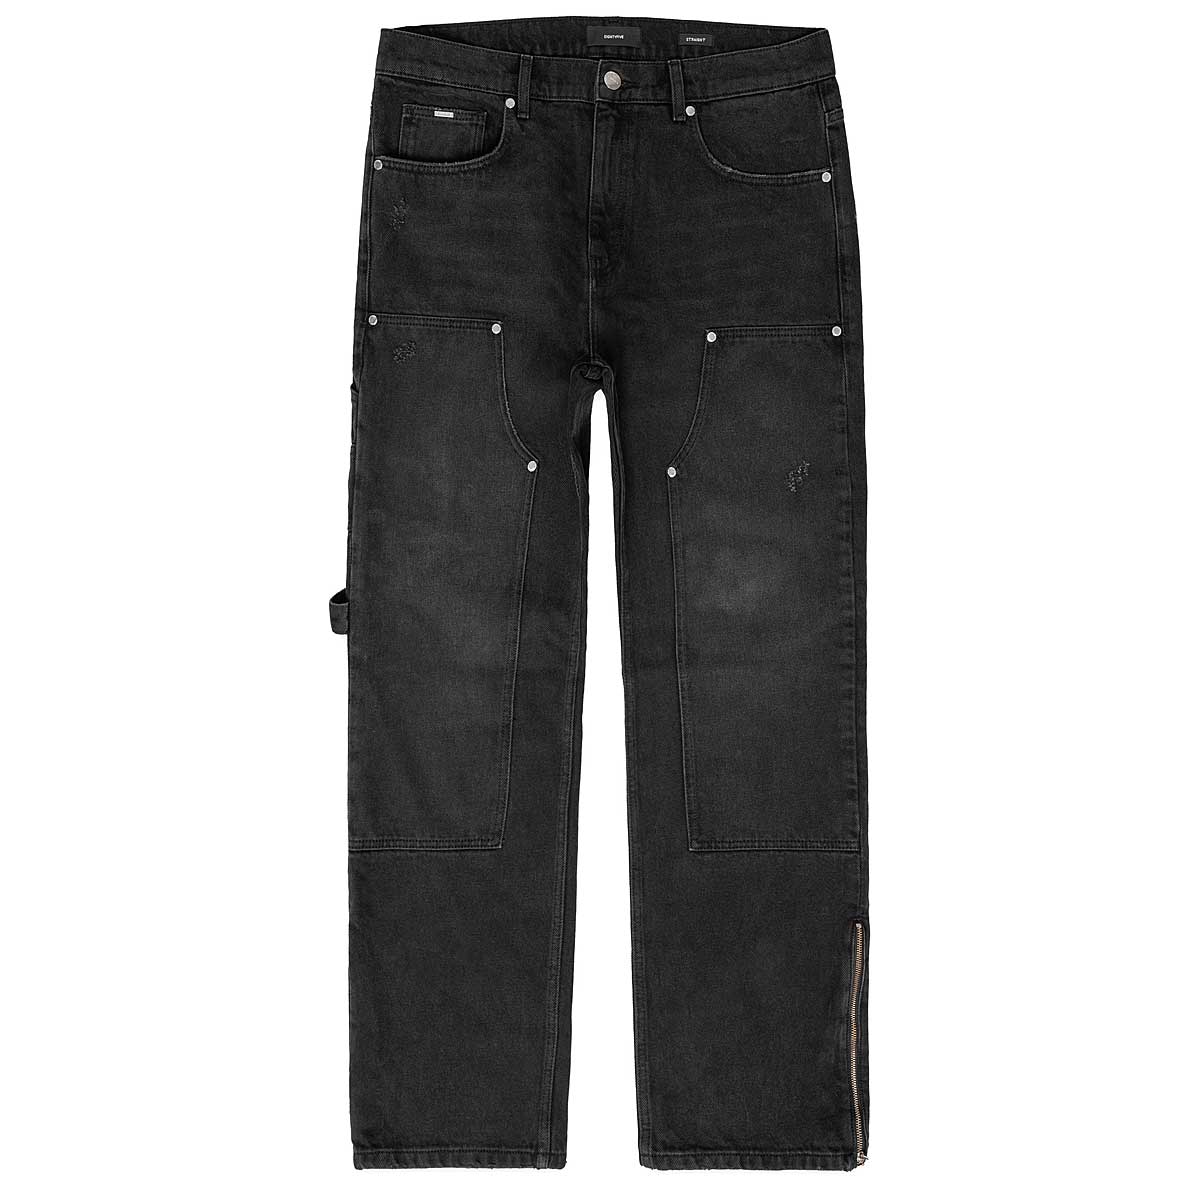 Kaufen Sie Zipped Carpenter Jeans für N/A 0.0 auf KICKZ.com!